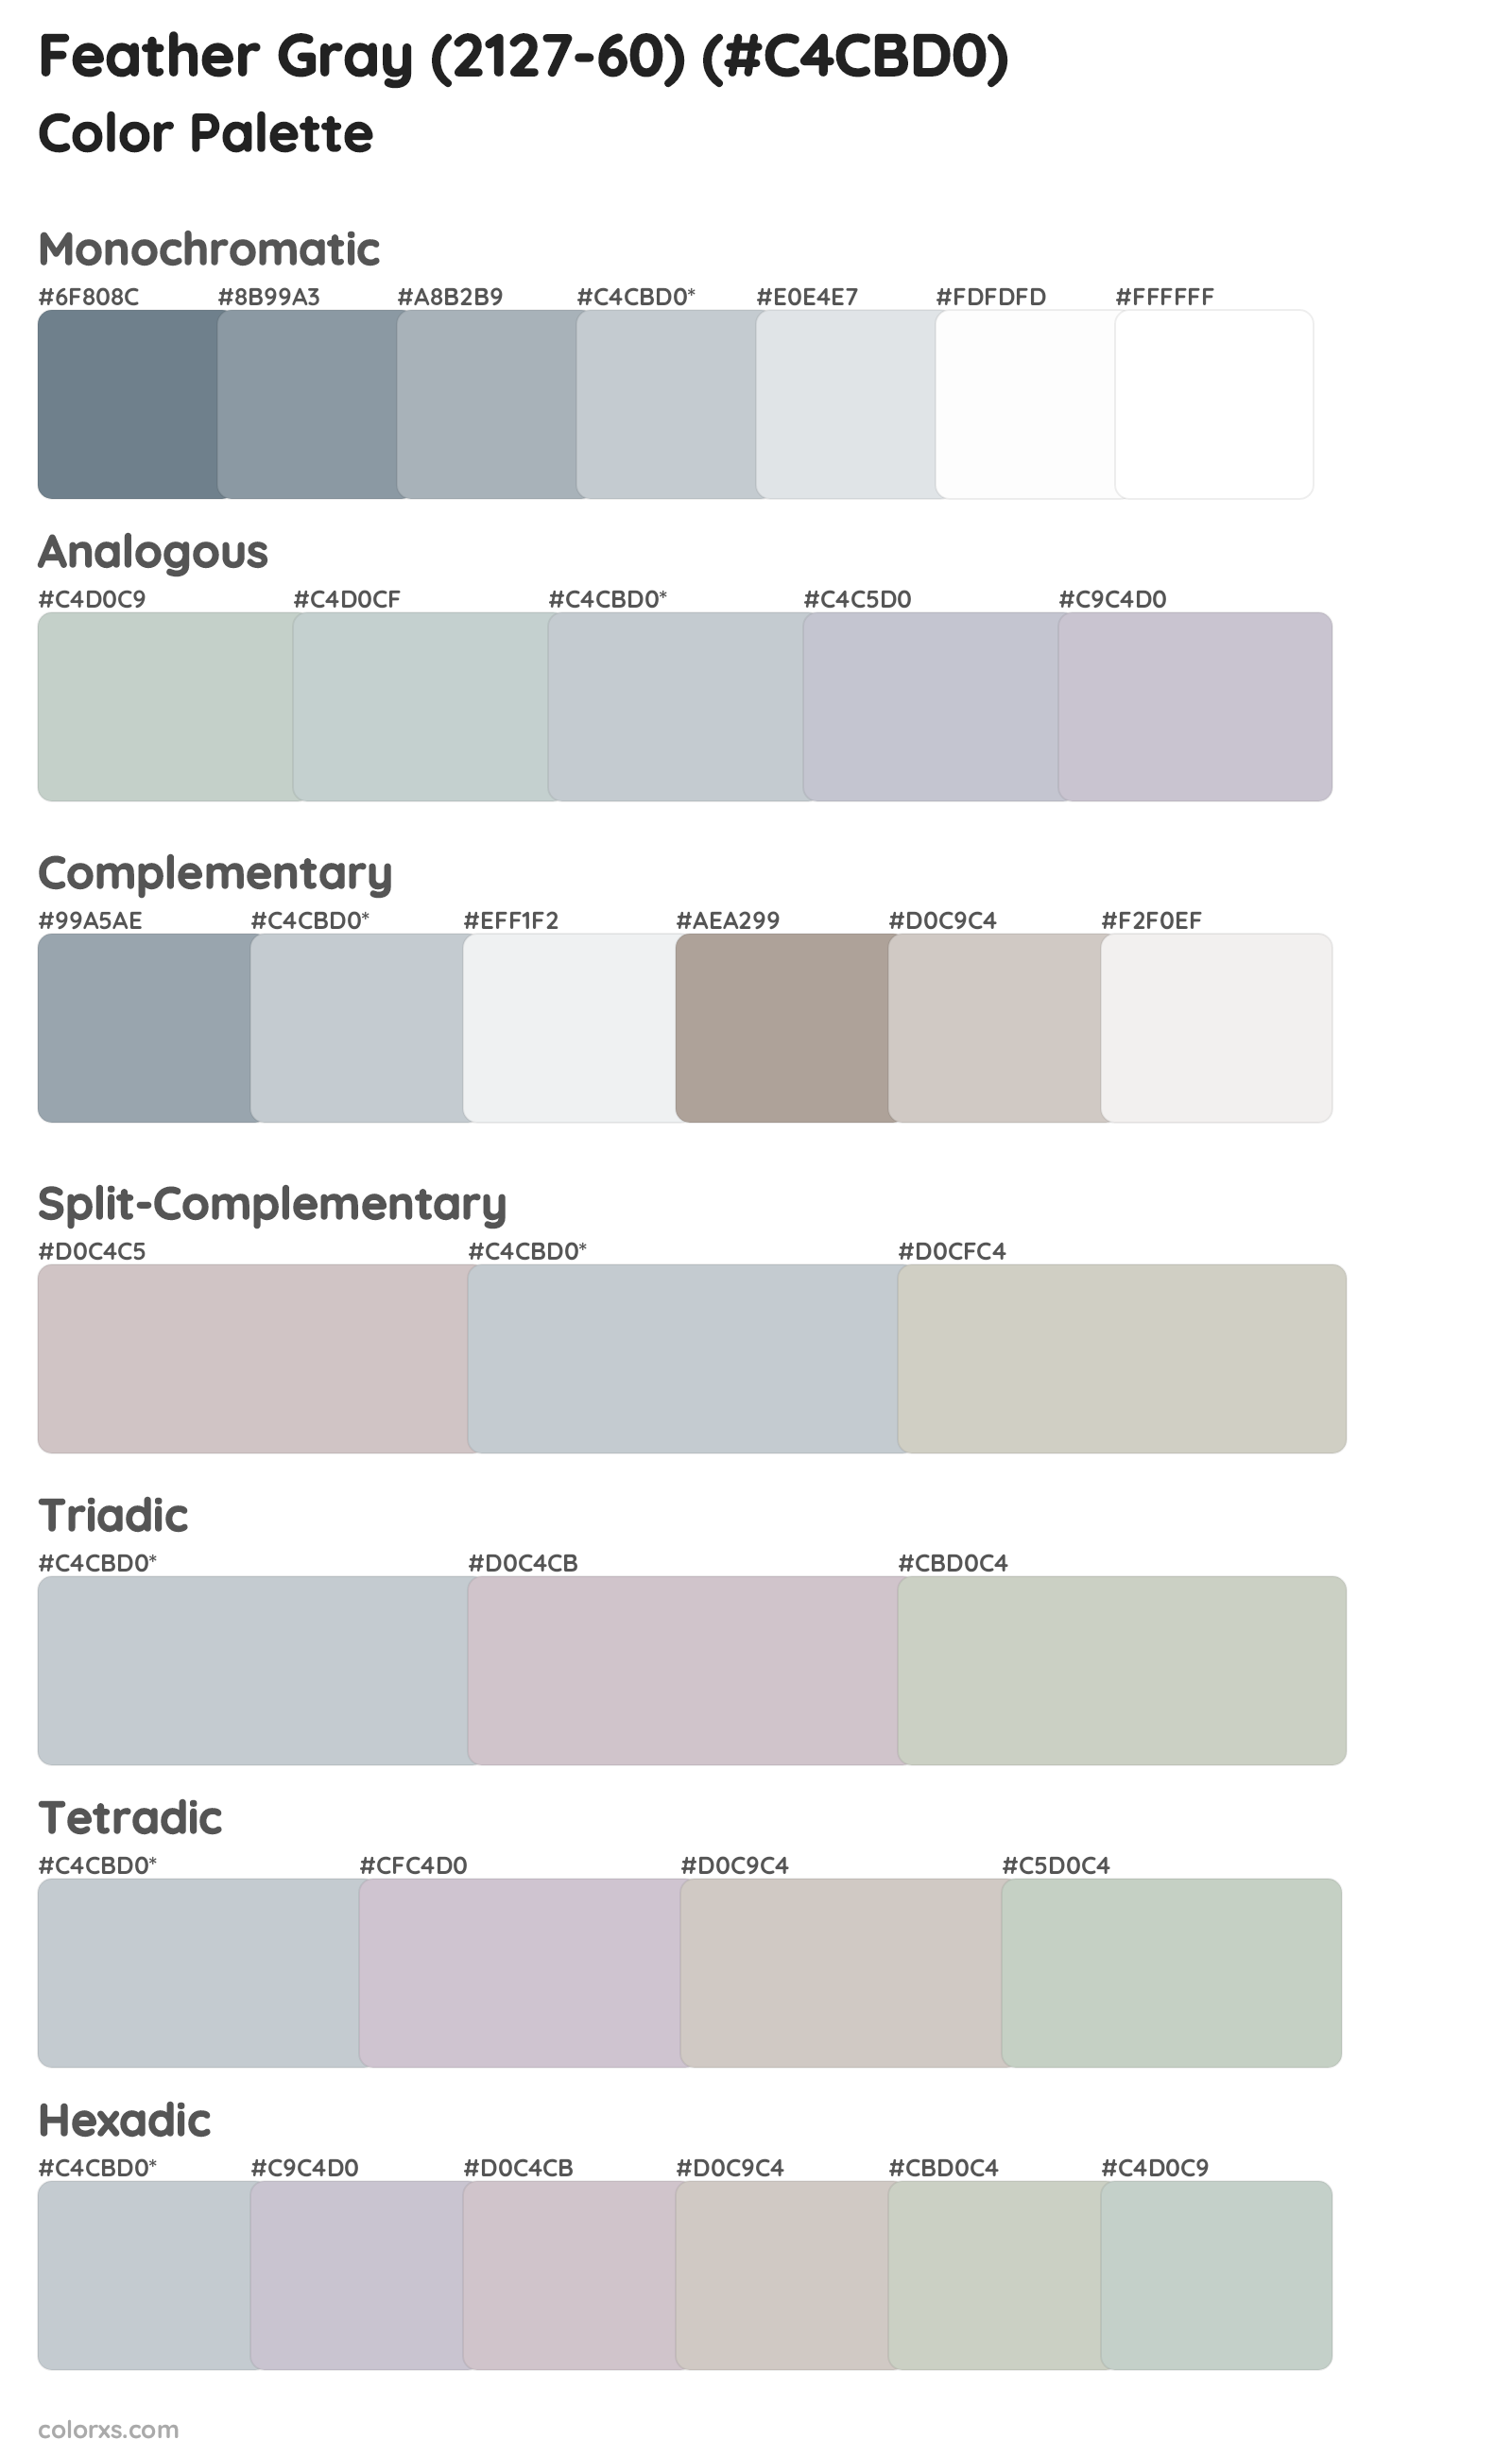 Feather Gray (2127-60) Color Scheme Palettes